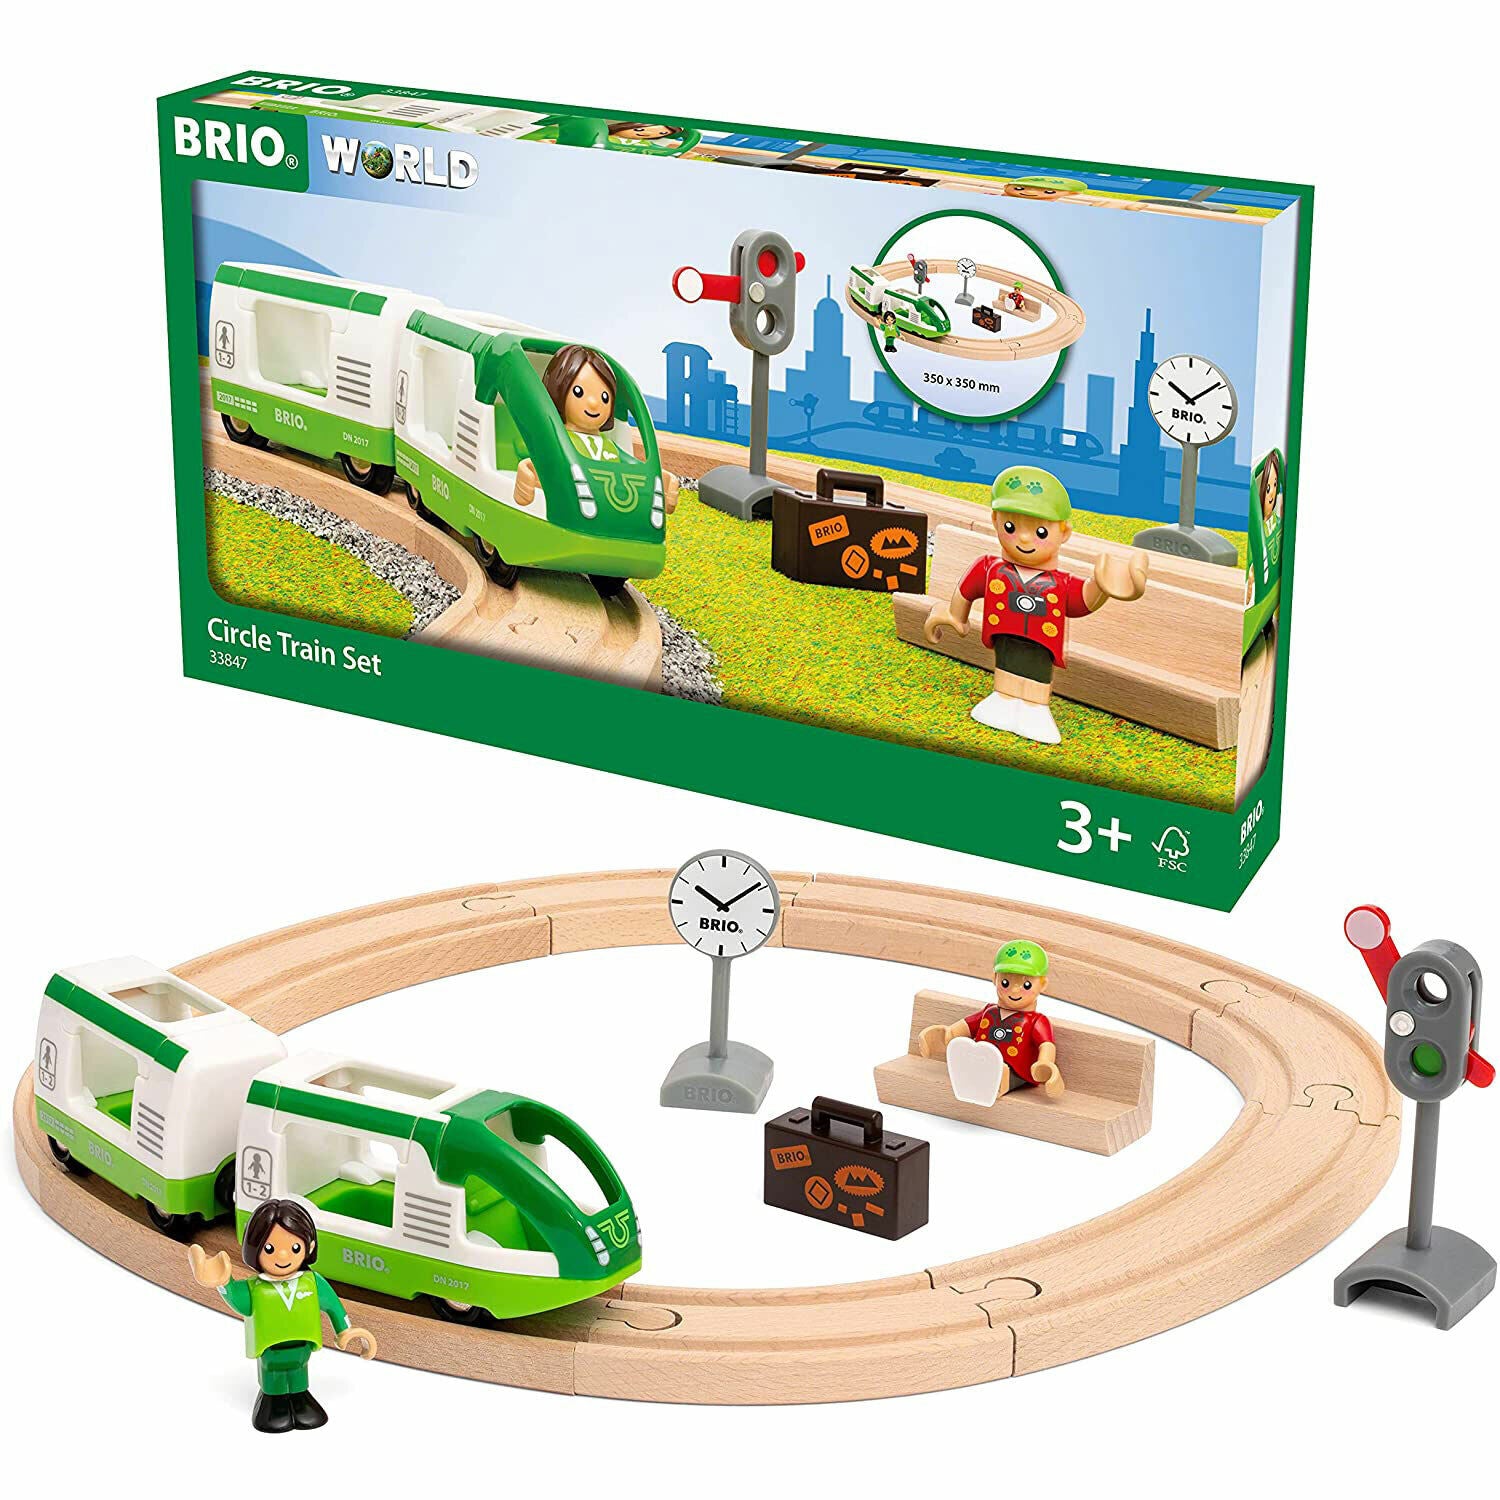 BRIO World Circle Train Set 33847 - Brand New in Box!